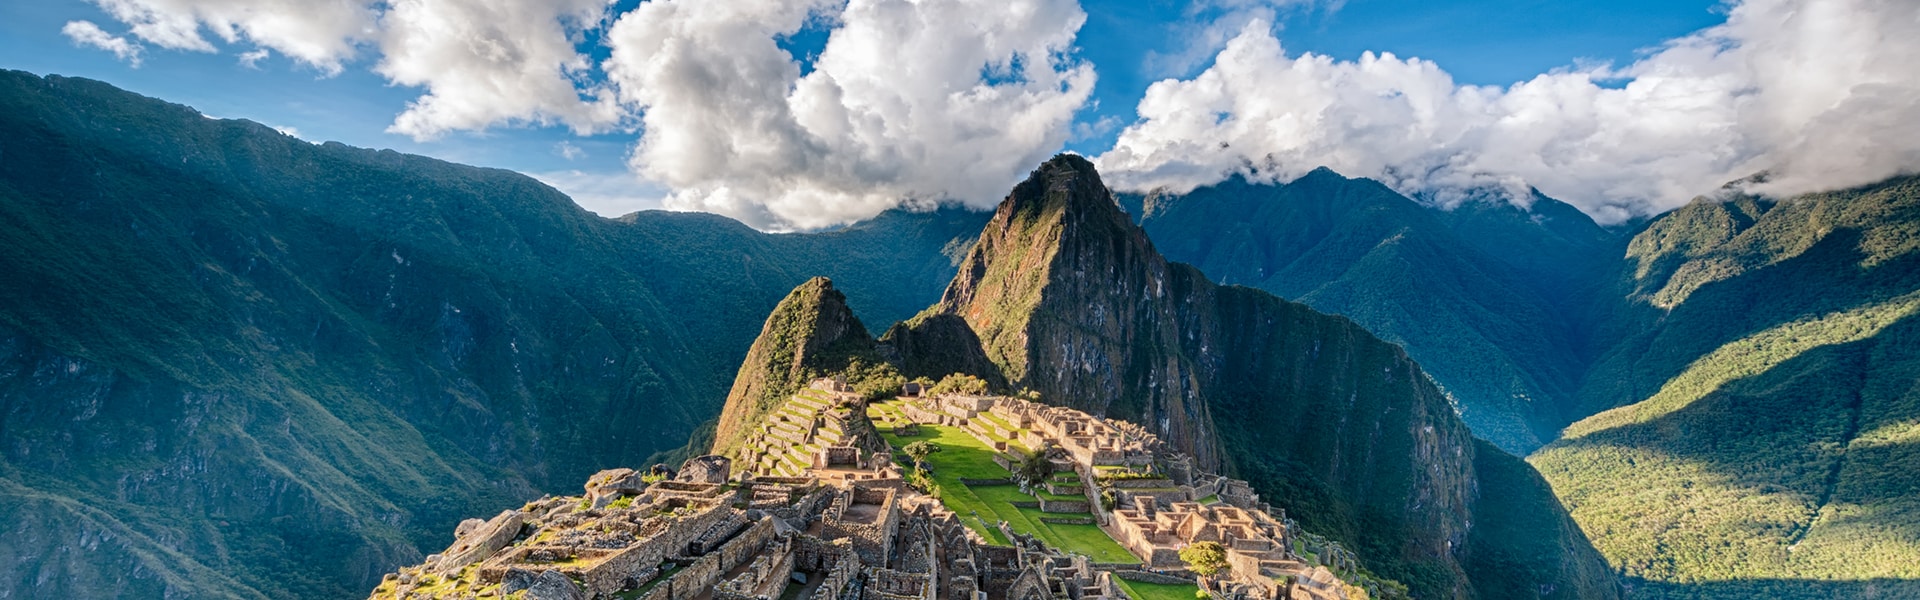 Main Peru